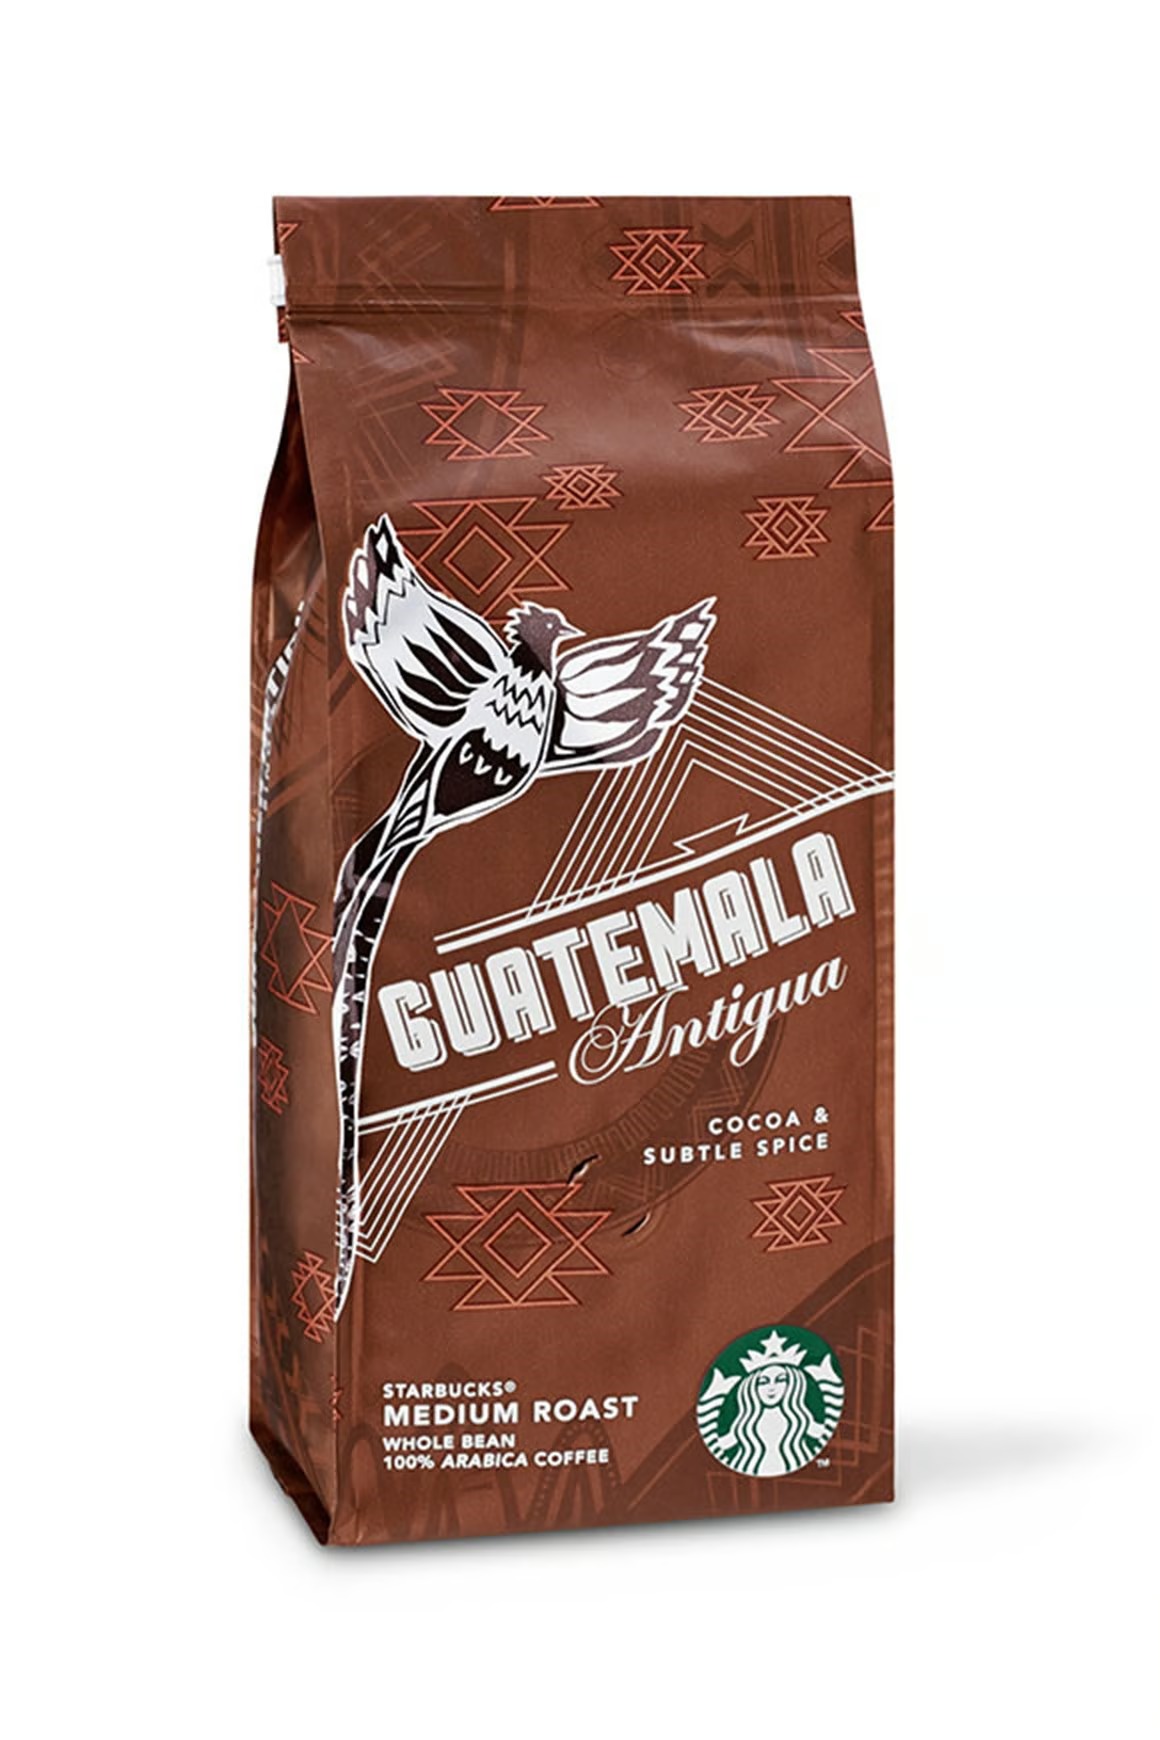 دانه قهوه استارباکس Guatemala Antigua گواتمالا آنتیگوا 250 گرمی